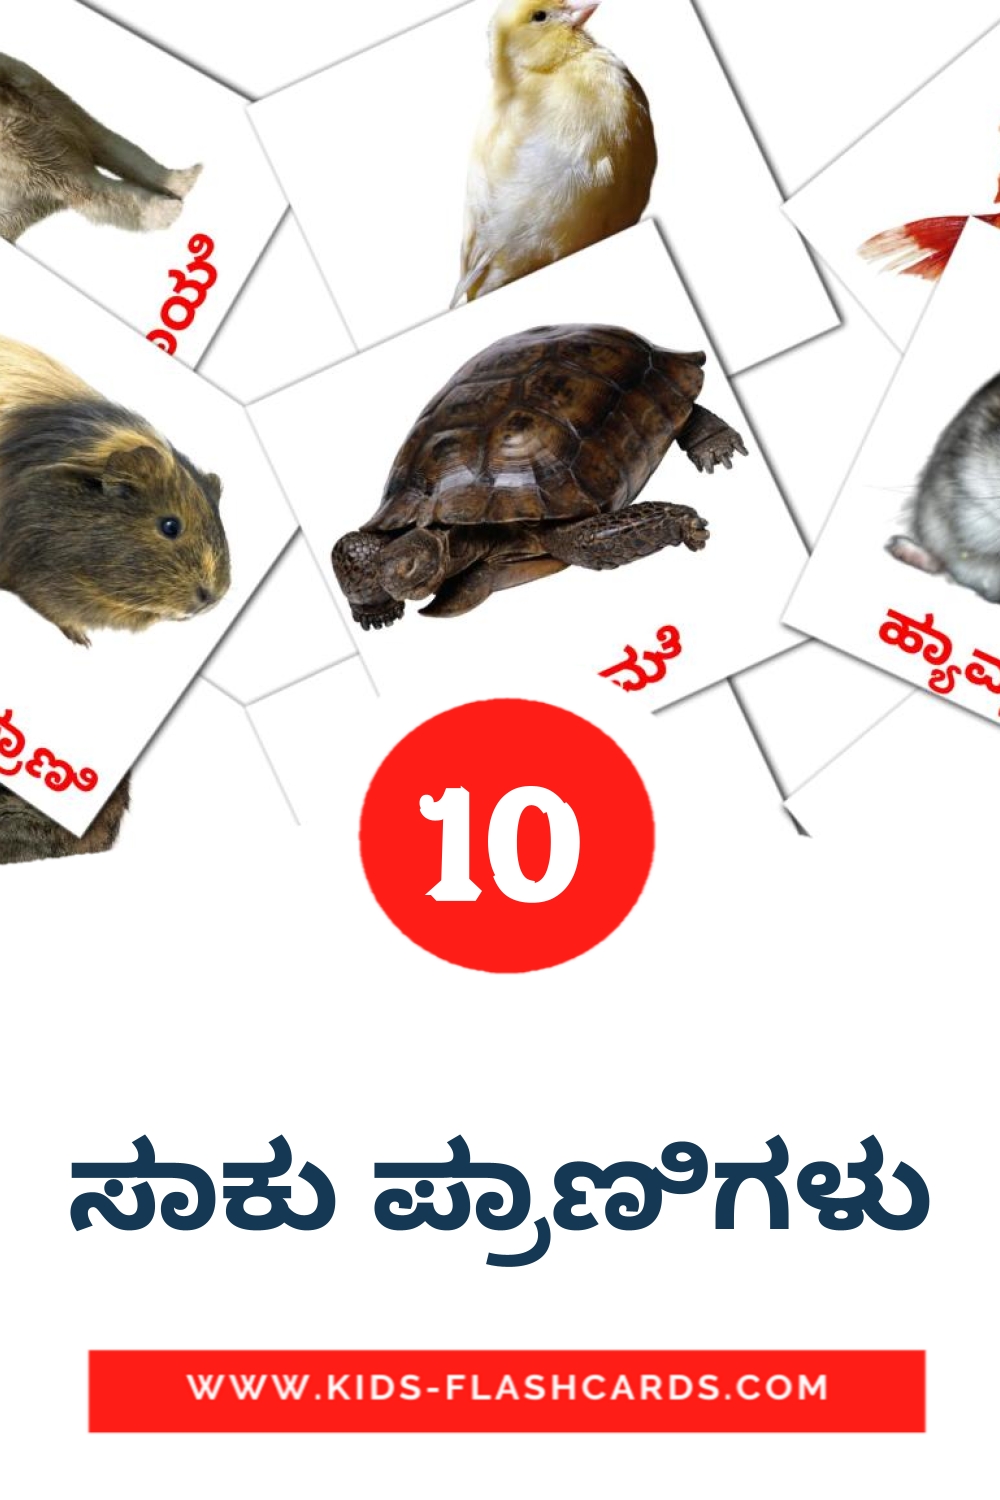 10 ಸಾಕು ಪ್ರಾಣಿಗಳು Bildkarten für den Kindergarten auf Kannada